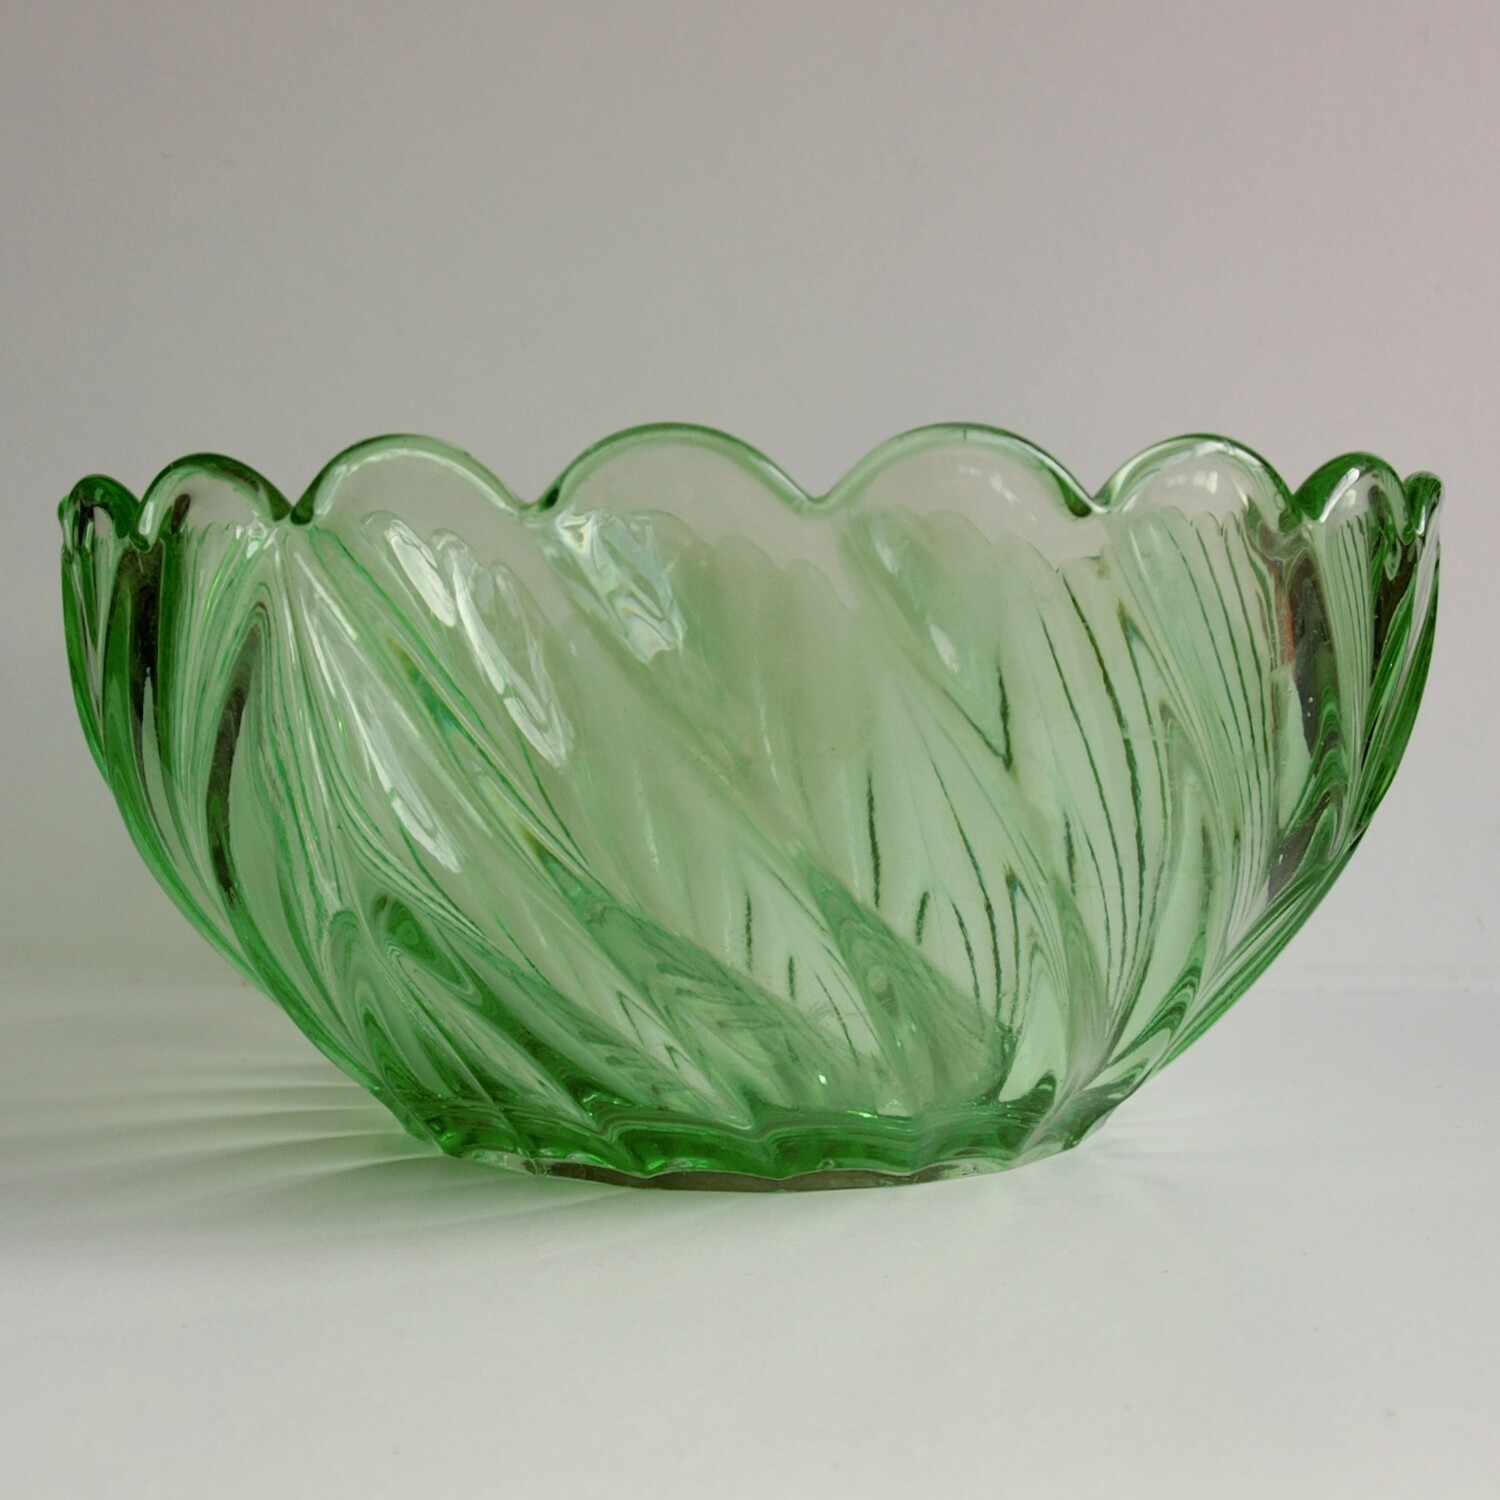 Large Vintage Green Depression Glass Fruit or Desert Bowl